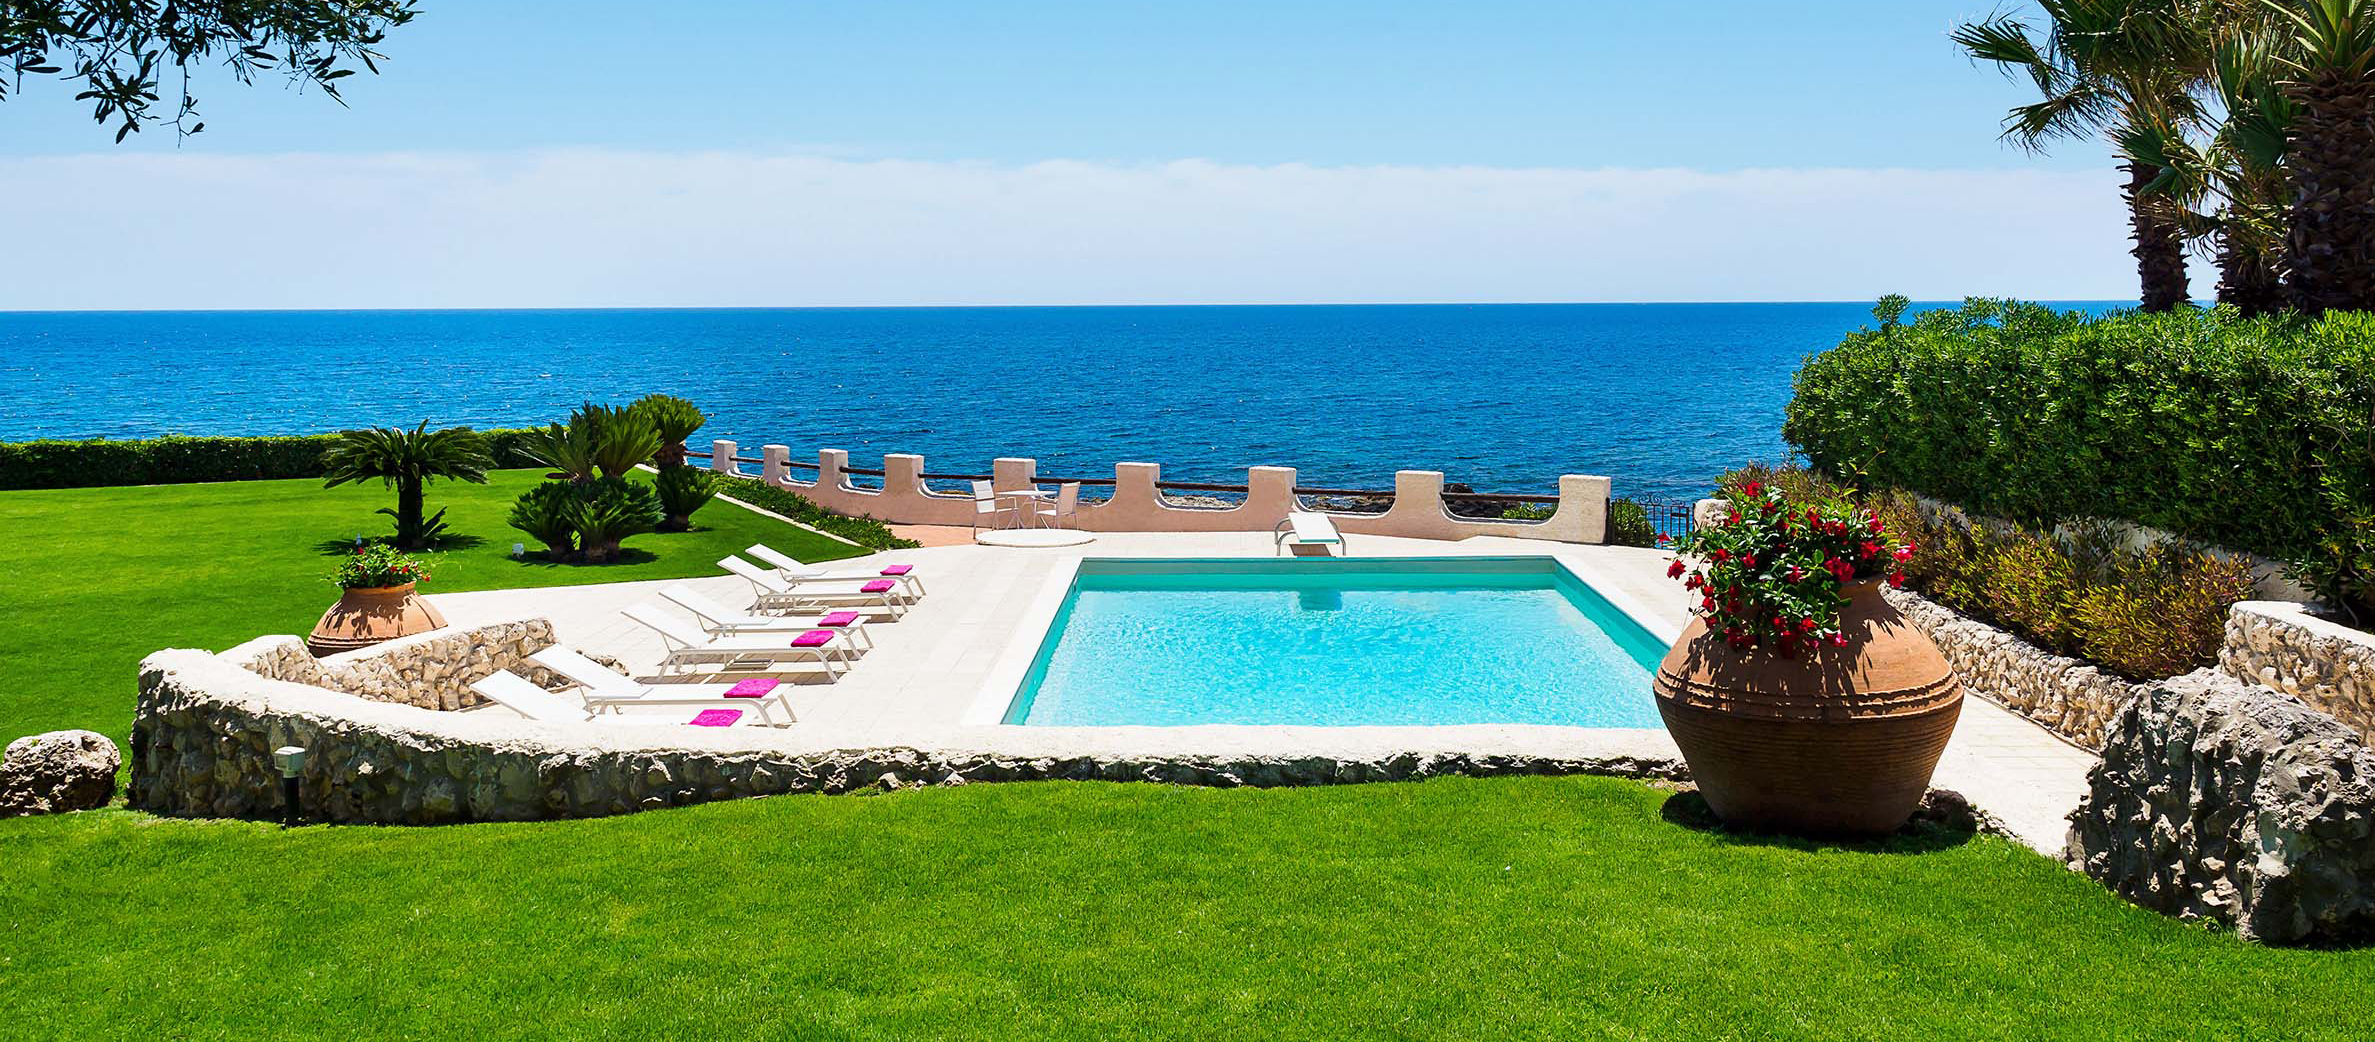 Blue Moon, Fontane Bianche, Sicilia - Villa con piscina in affitto - 1